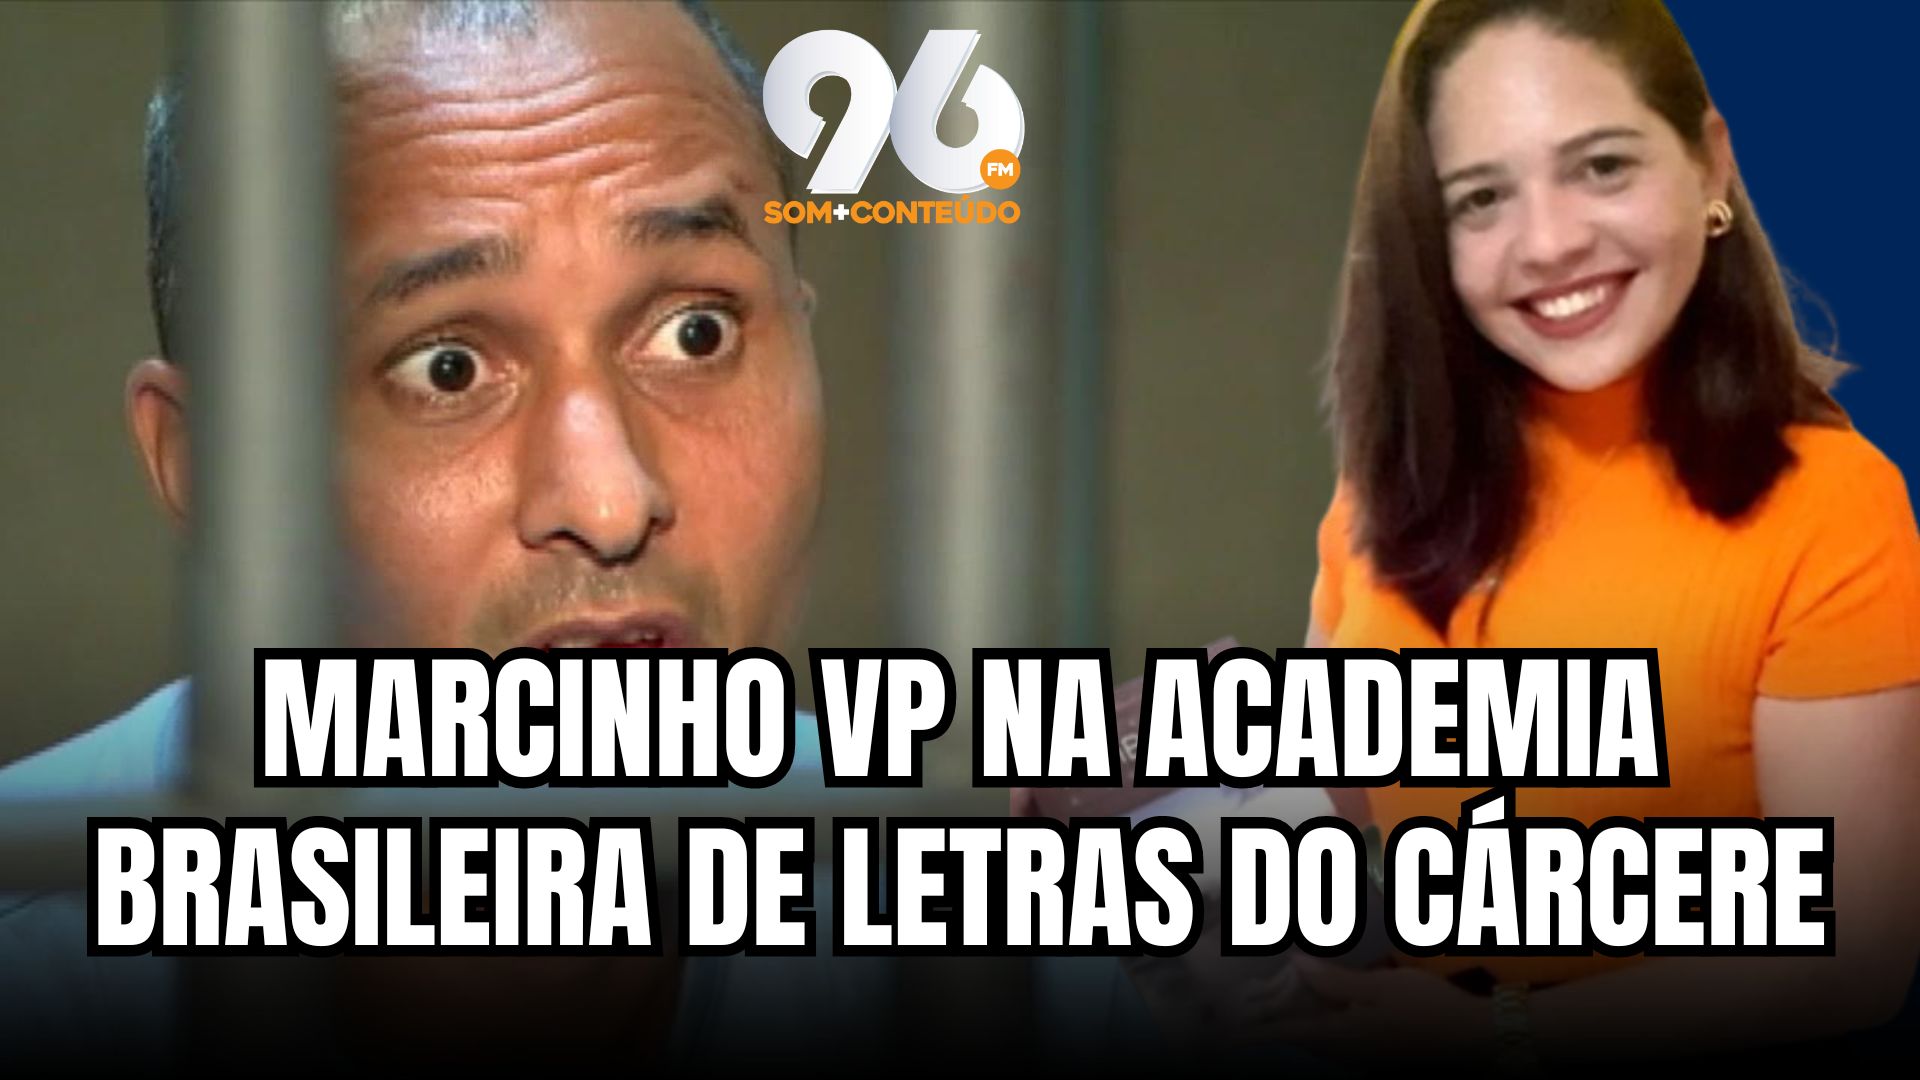 [VIDEO] Além de Marcinho VP, Potiguar vai integrar Academia Brasileira de Letras do Cárcere